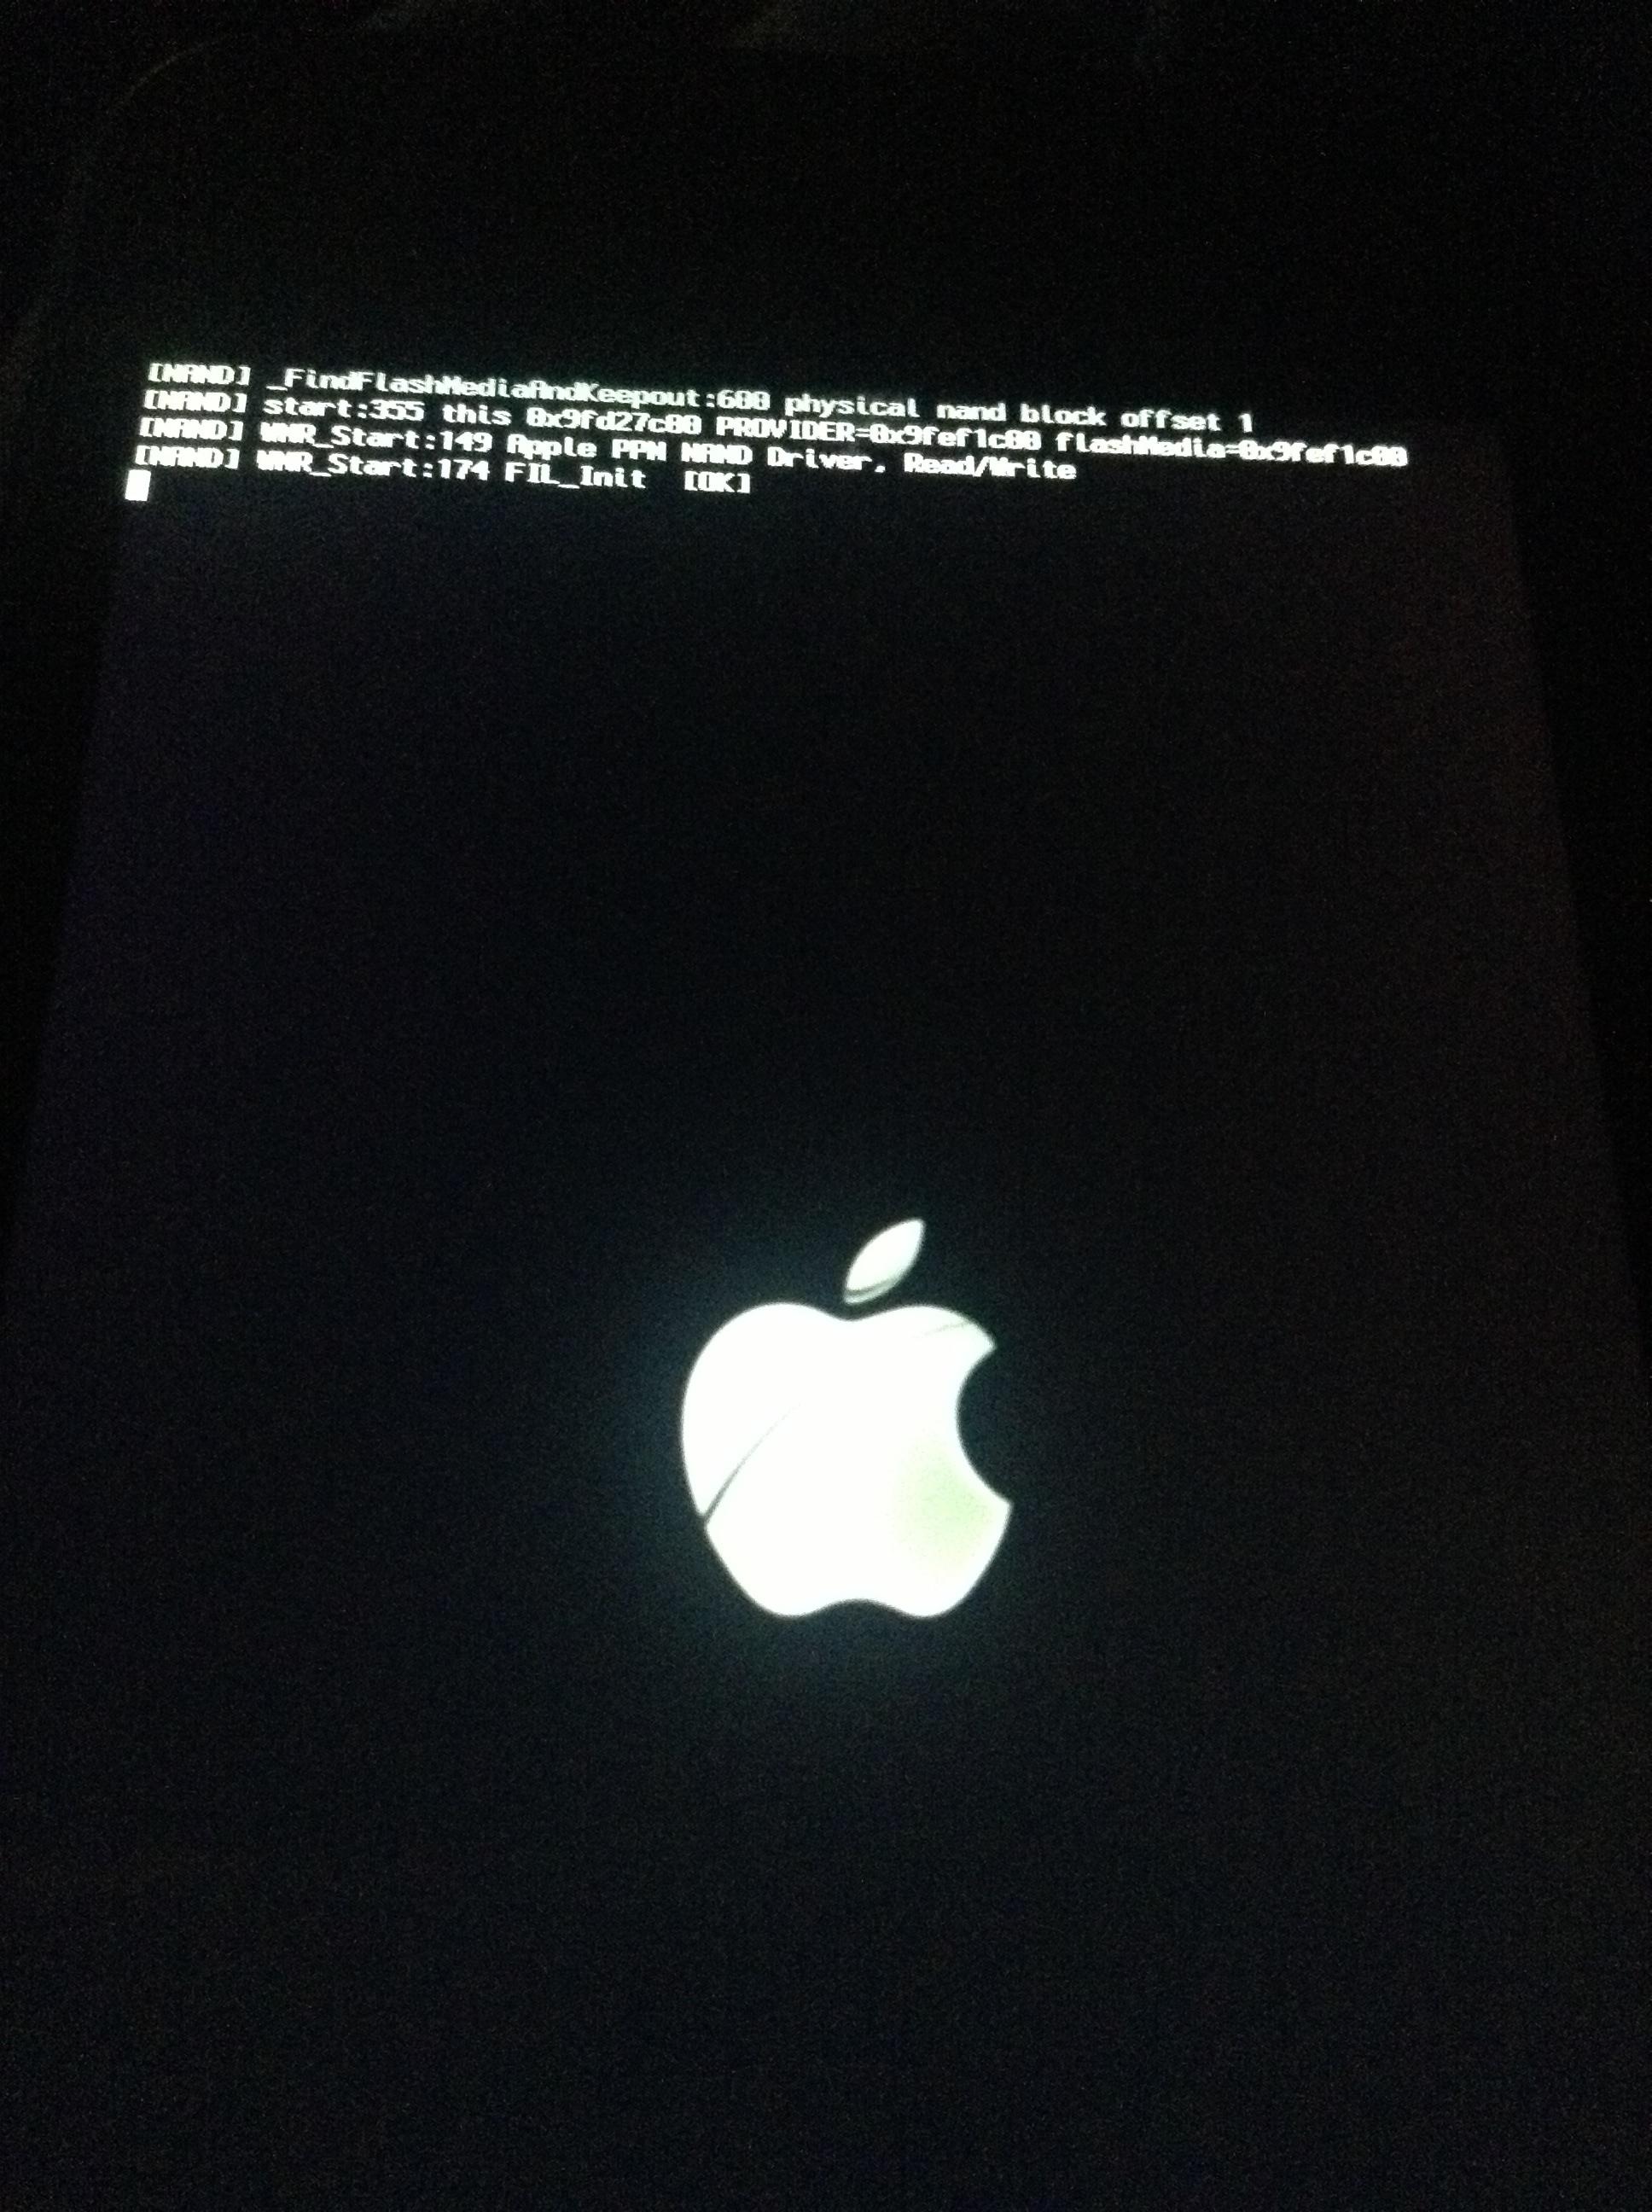 My iPhone 5 crashed while turning on